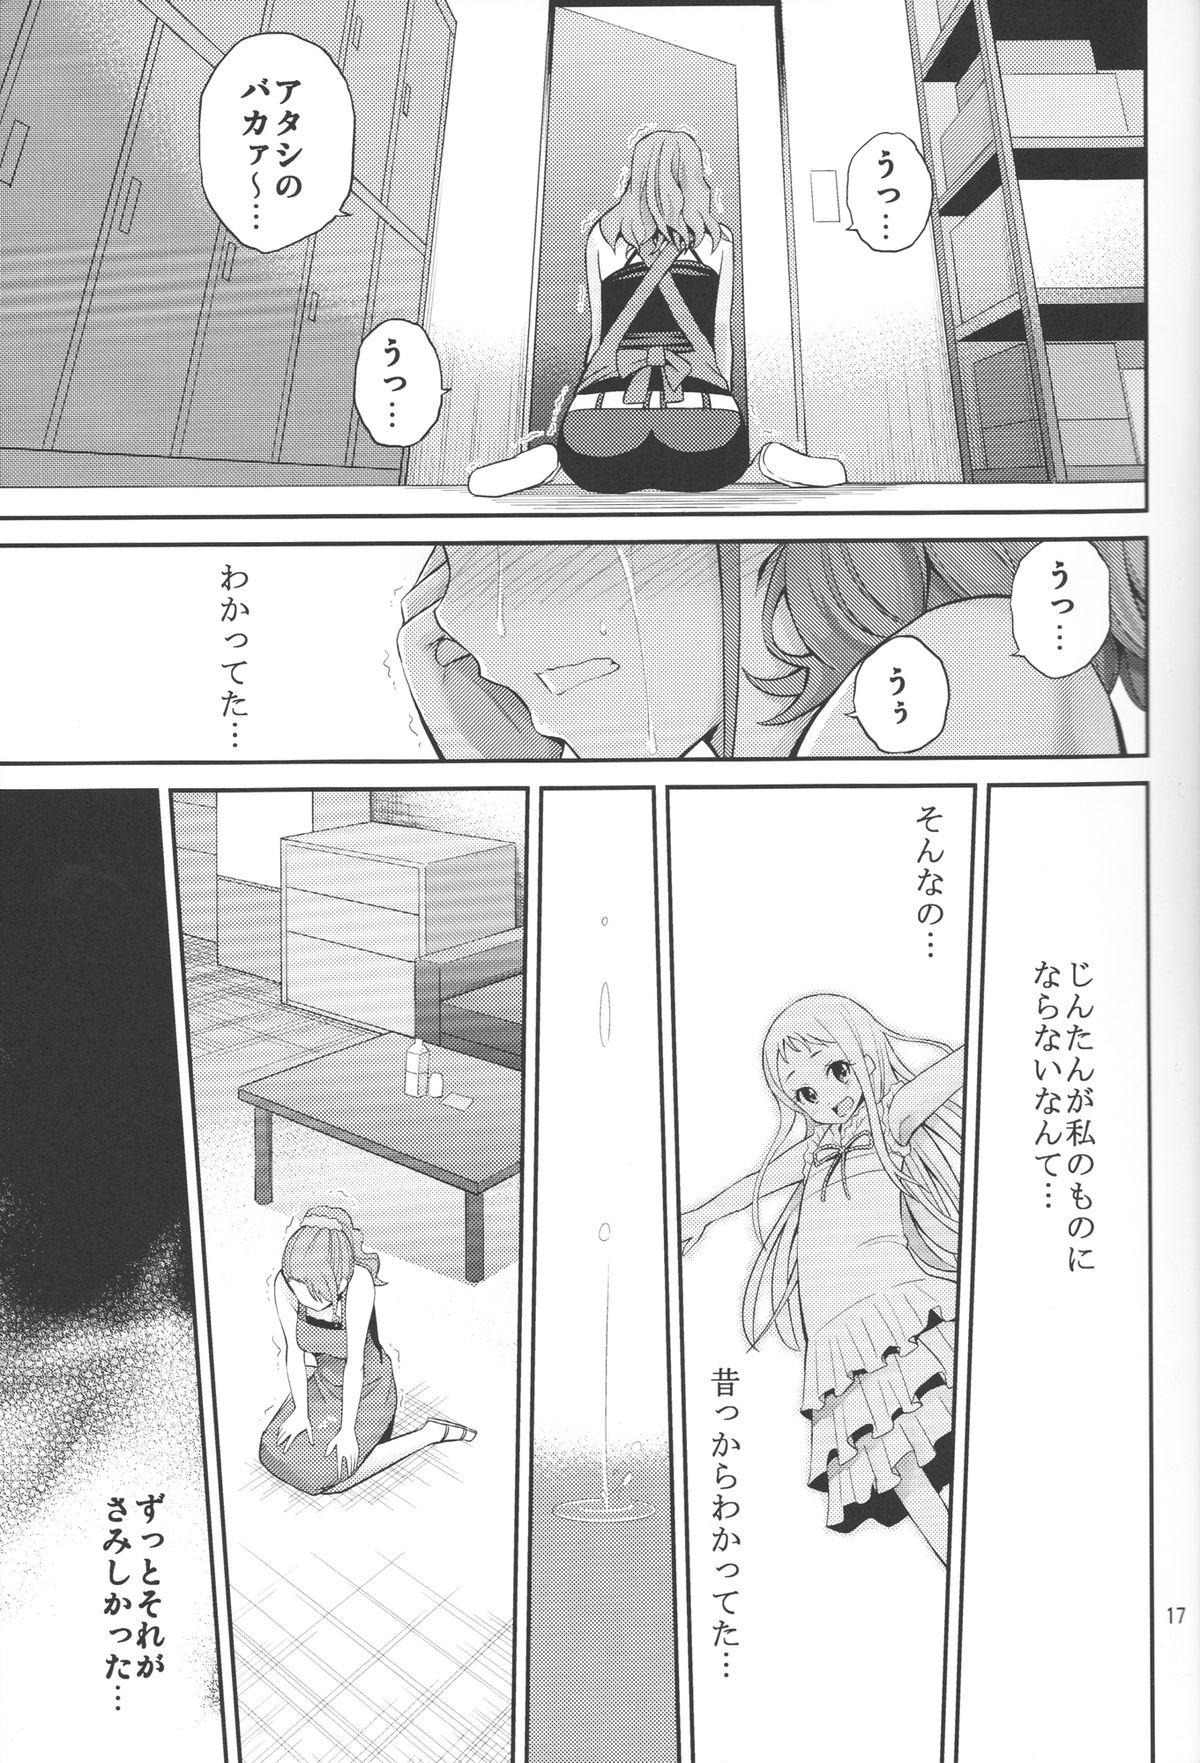 Ano Anaru no Sundome Manga o Bokutachi wa Mada Shiranai. 15